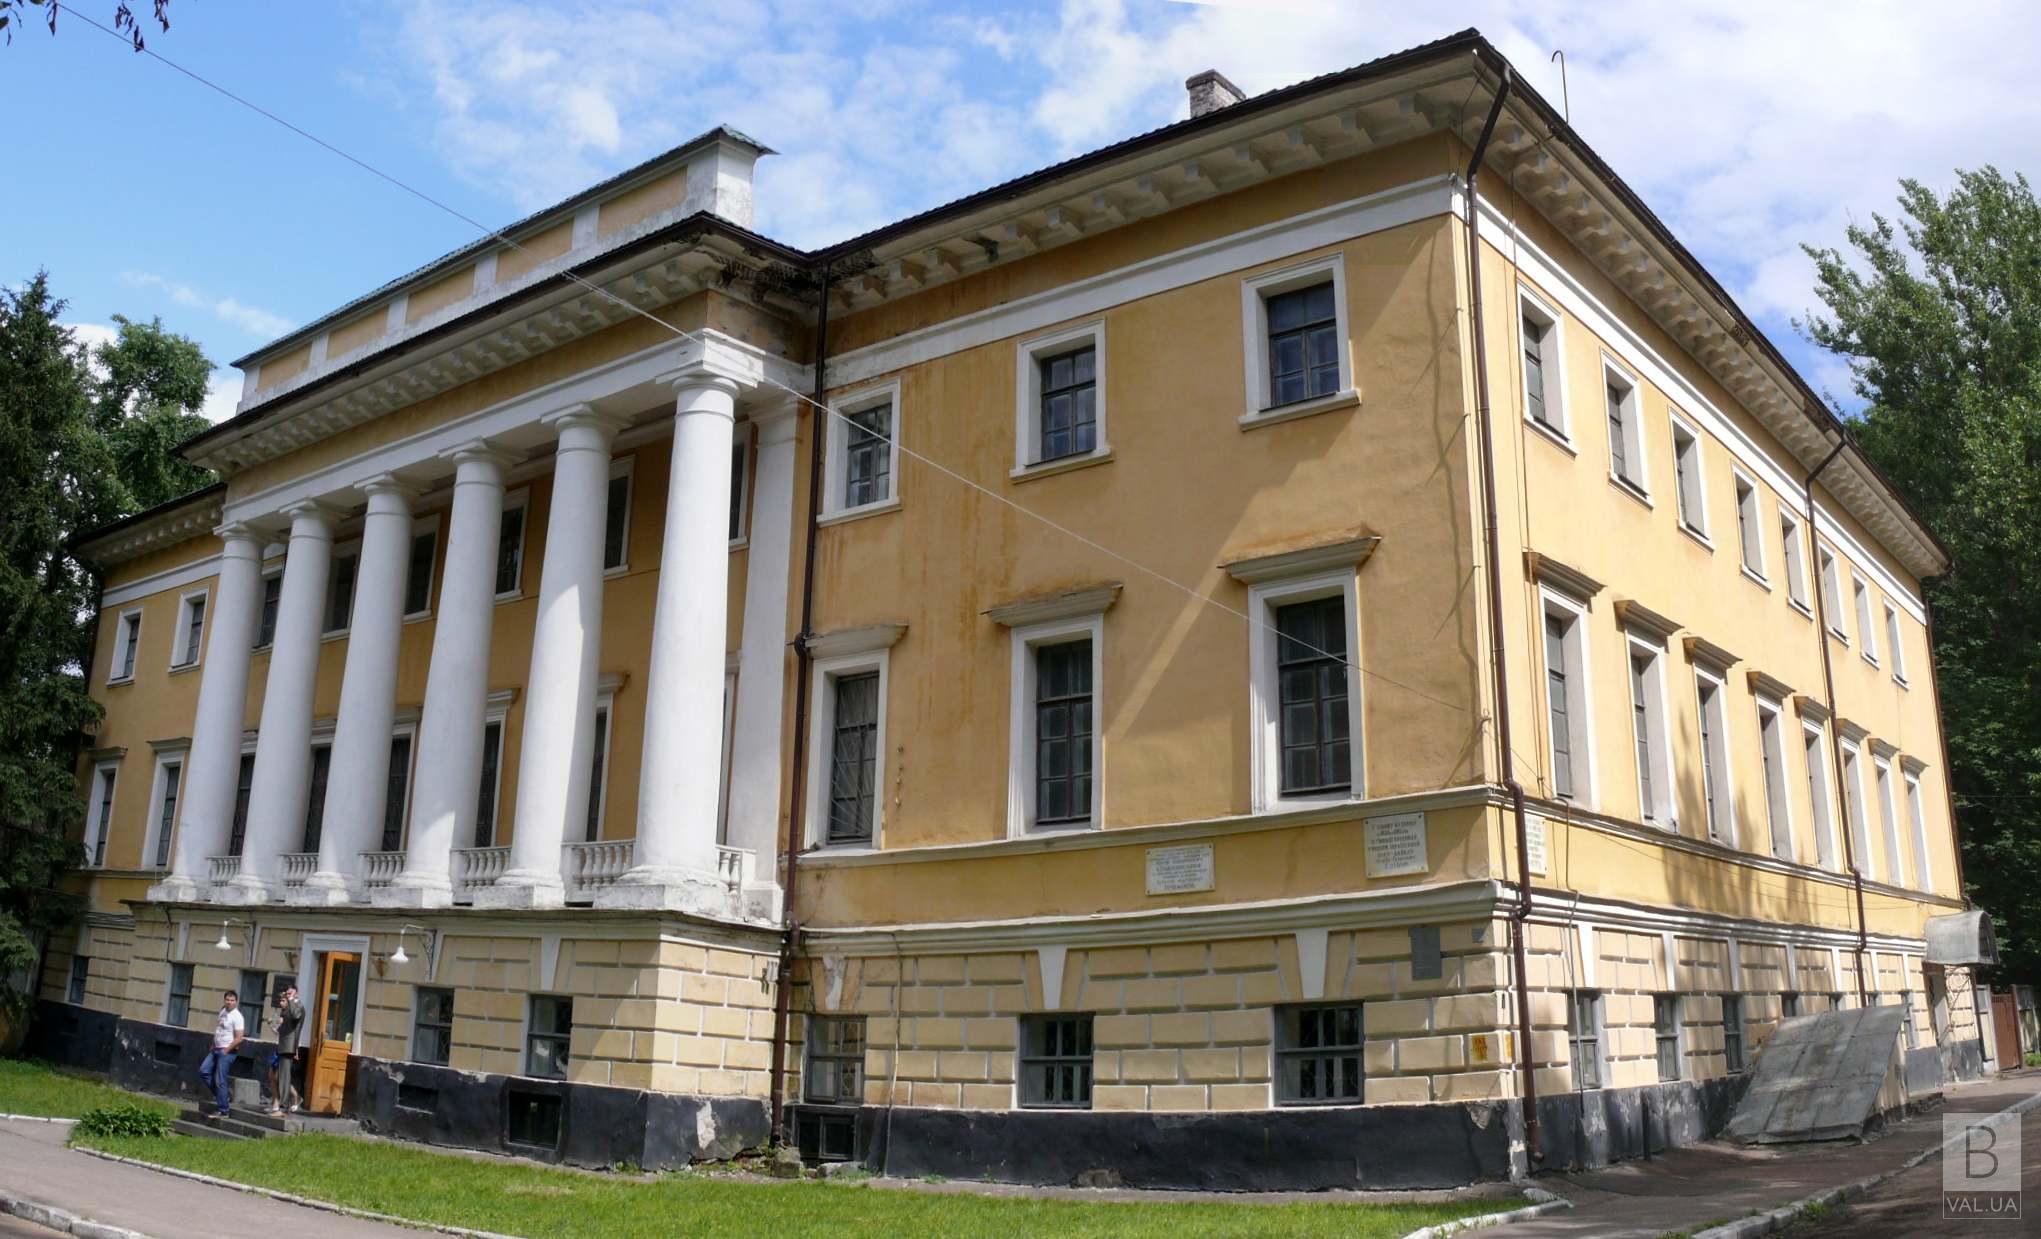 Черниговский исторический музей имени Тарновского будет принимать посетителей с 11 июля